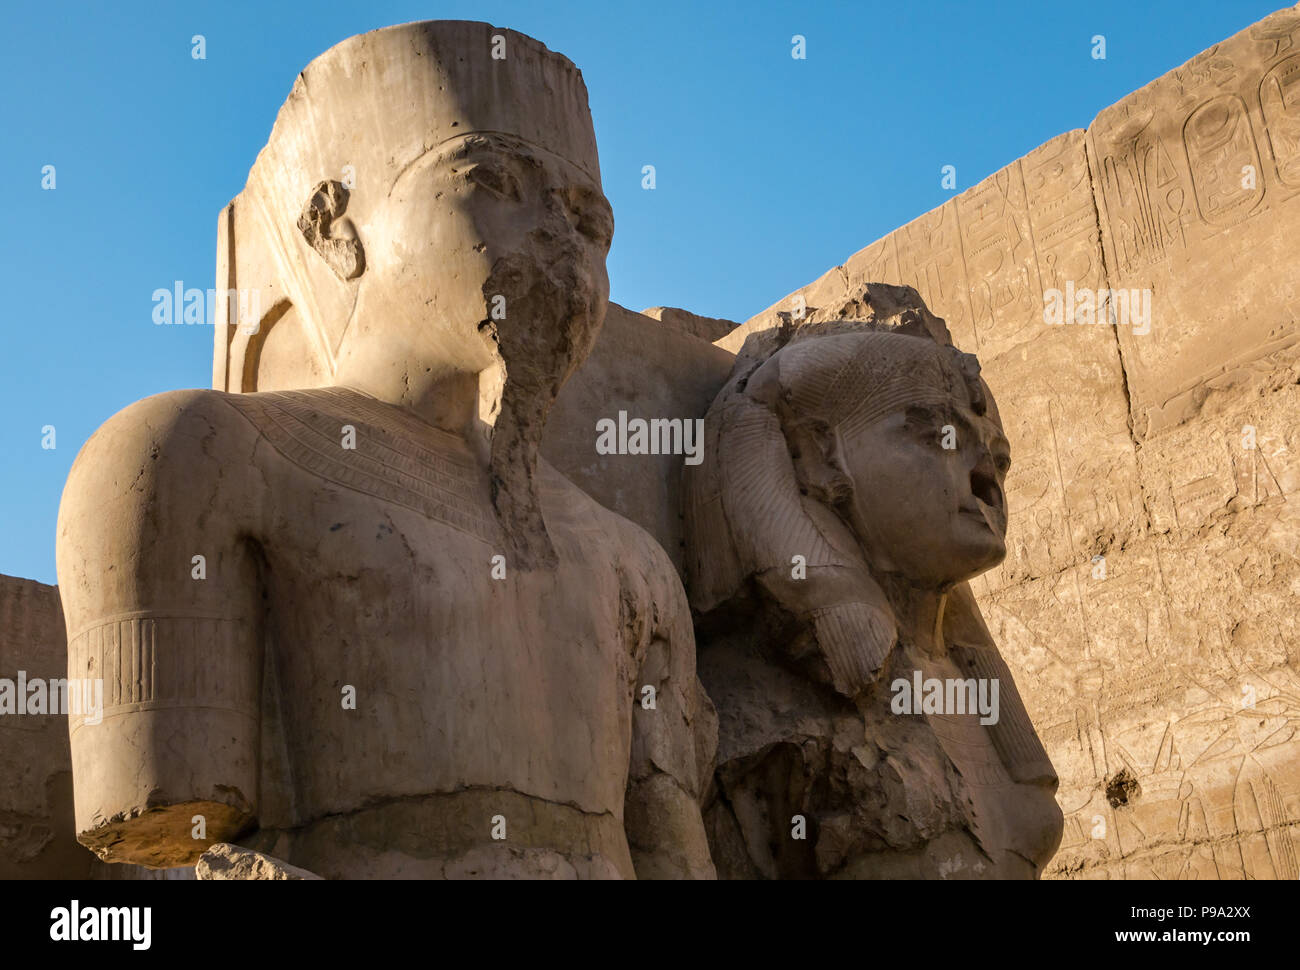 Colossi figure sedute di Ramses II e della moglie, Tempio di Luxor Luxor Egitto, Africa Foto Stock